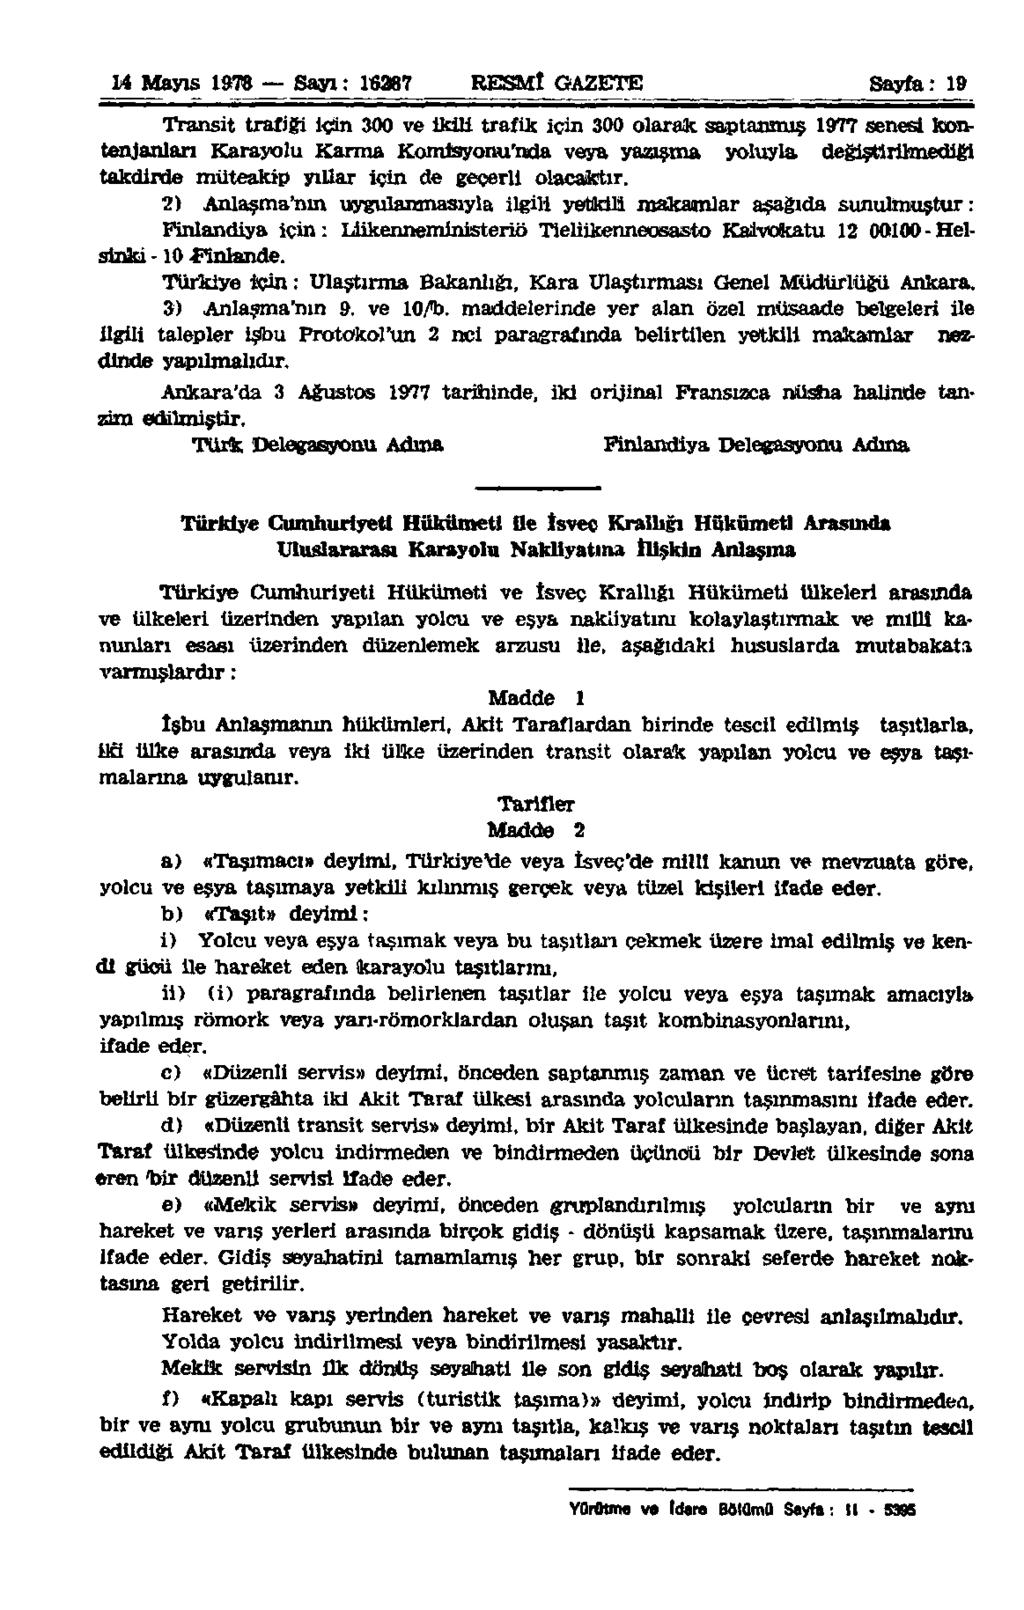 14 Mayıs 1978 Sayı : 16287 RESMÎ GAZETE Sayfa: 19 Transit trafiği için 300 ve ikili trafik için 300 olarak saptanmış 1977 senesi kontenjanları Karayolu Karma Komisyonu'nda veya yazışma yoluyla